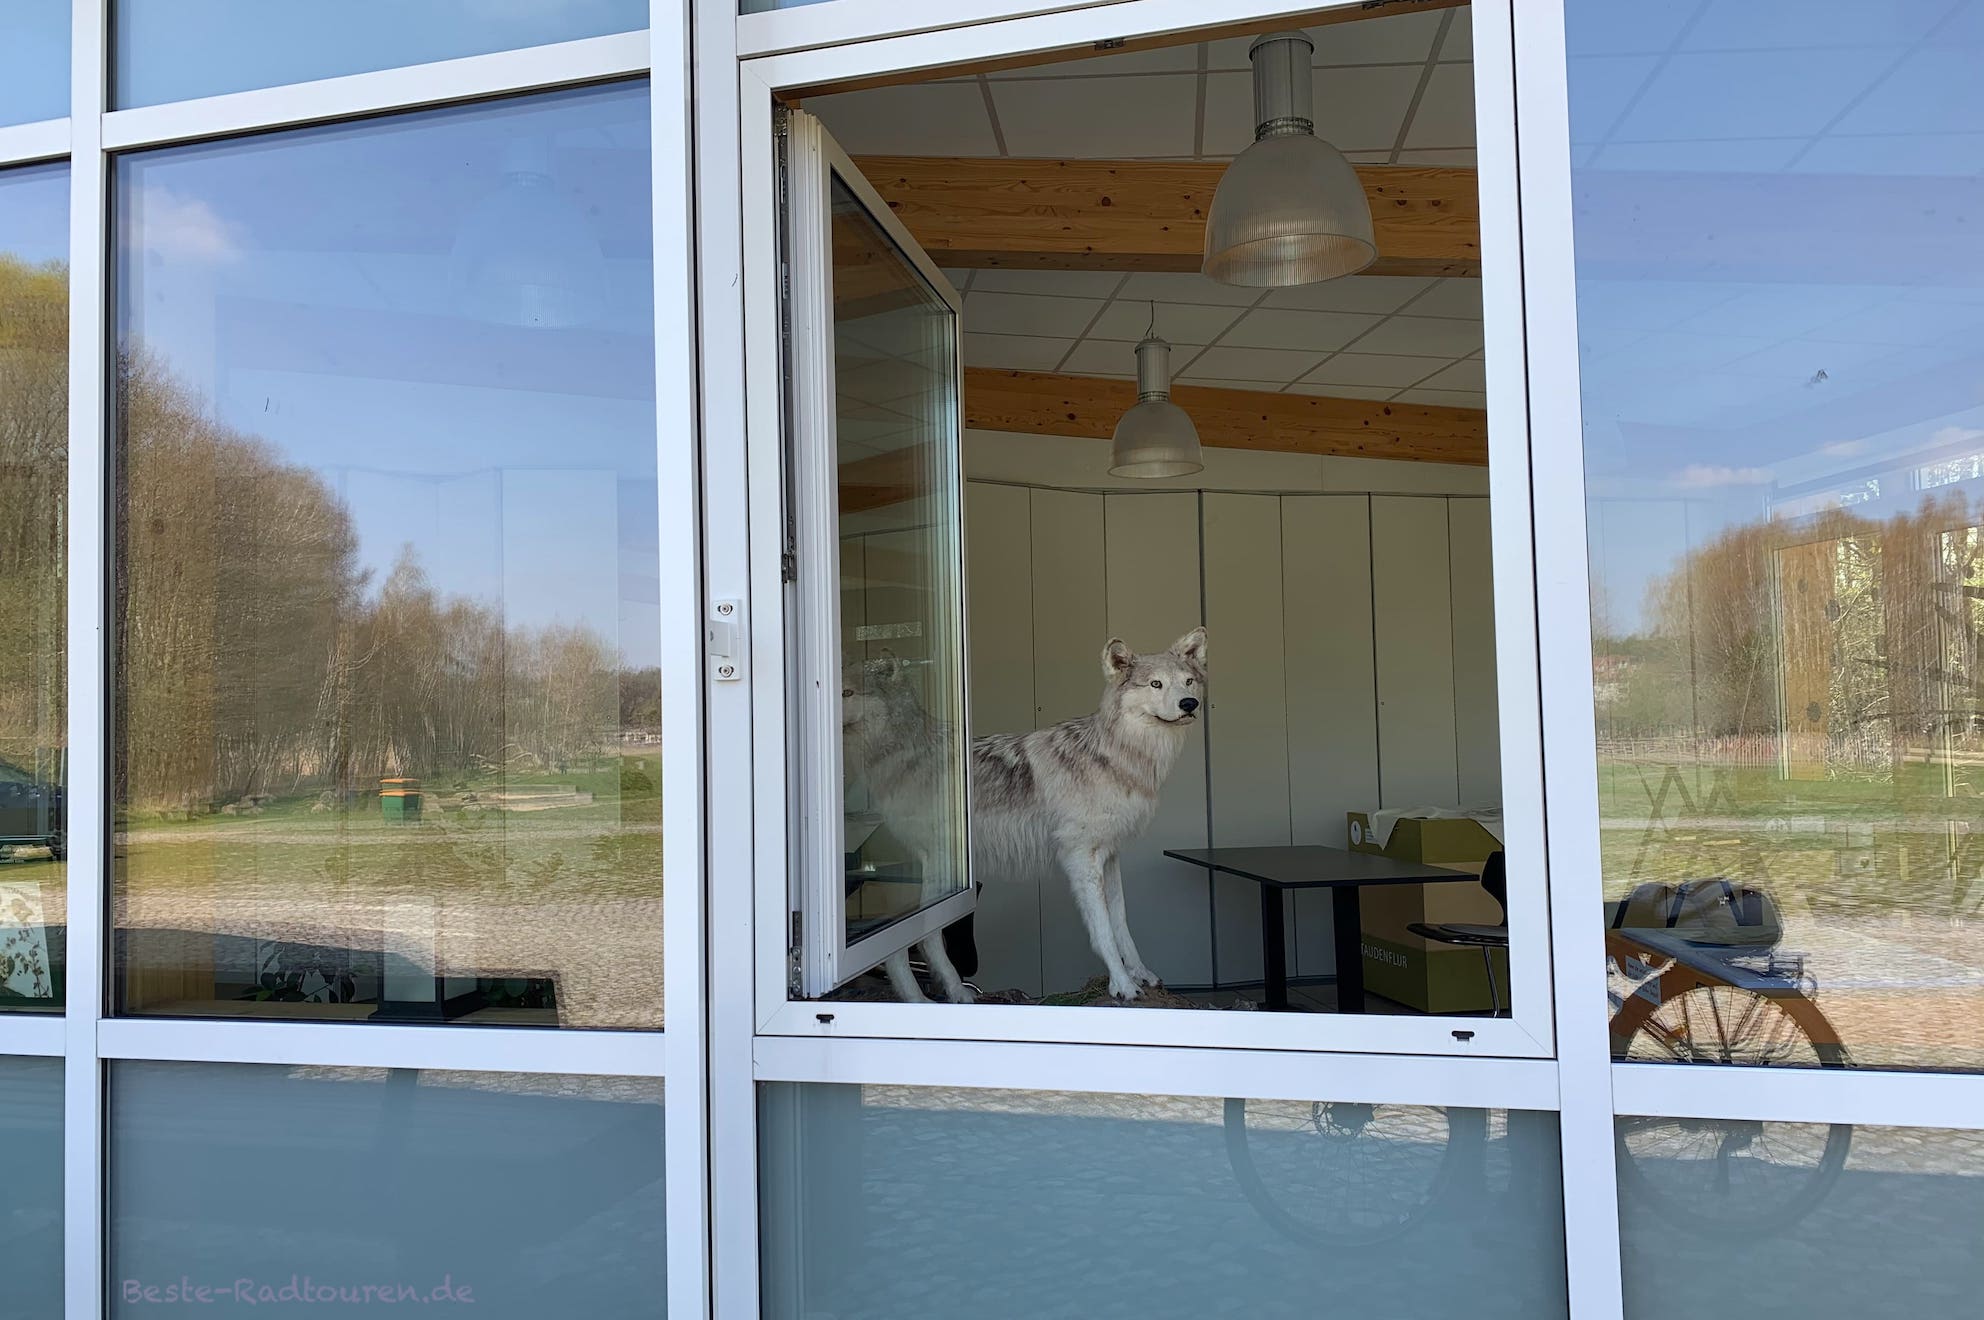 Foto durch das Fenster des Gebäudes vom "Naturparkzentrum am Wildgehege Glauer Tal", zu sehen ist ein ausgestopfter Wolf